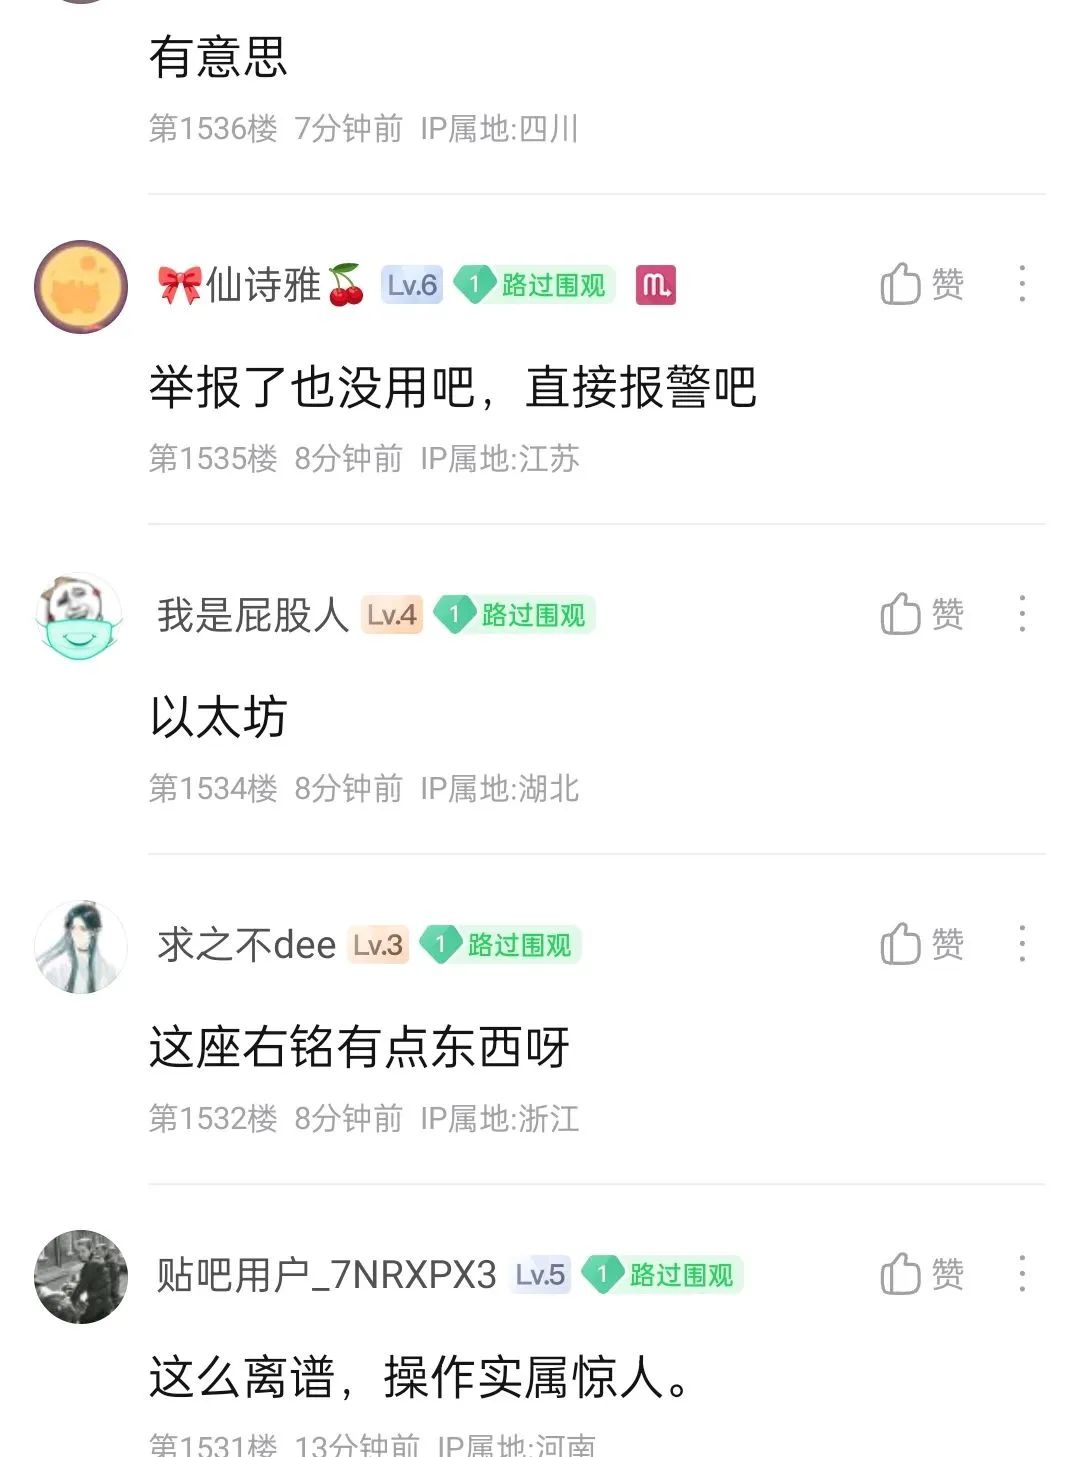 大无语：“小仙女”盗用网友offer截图骗奖学金被曝光